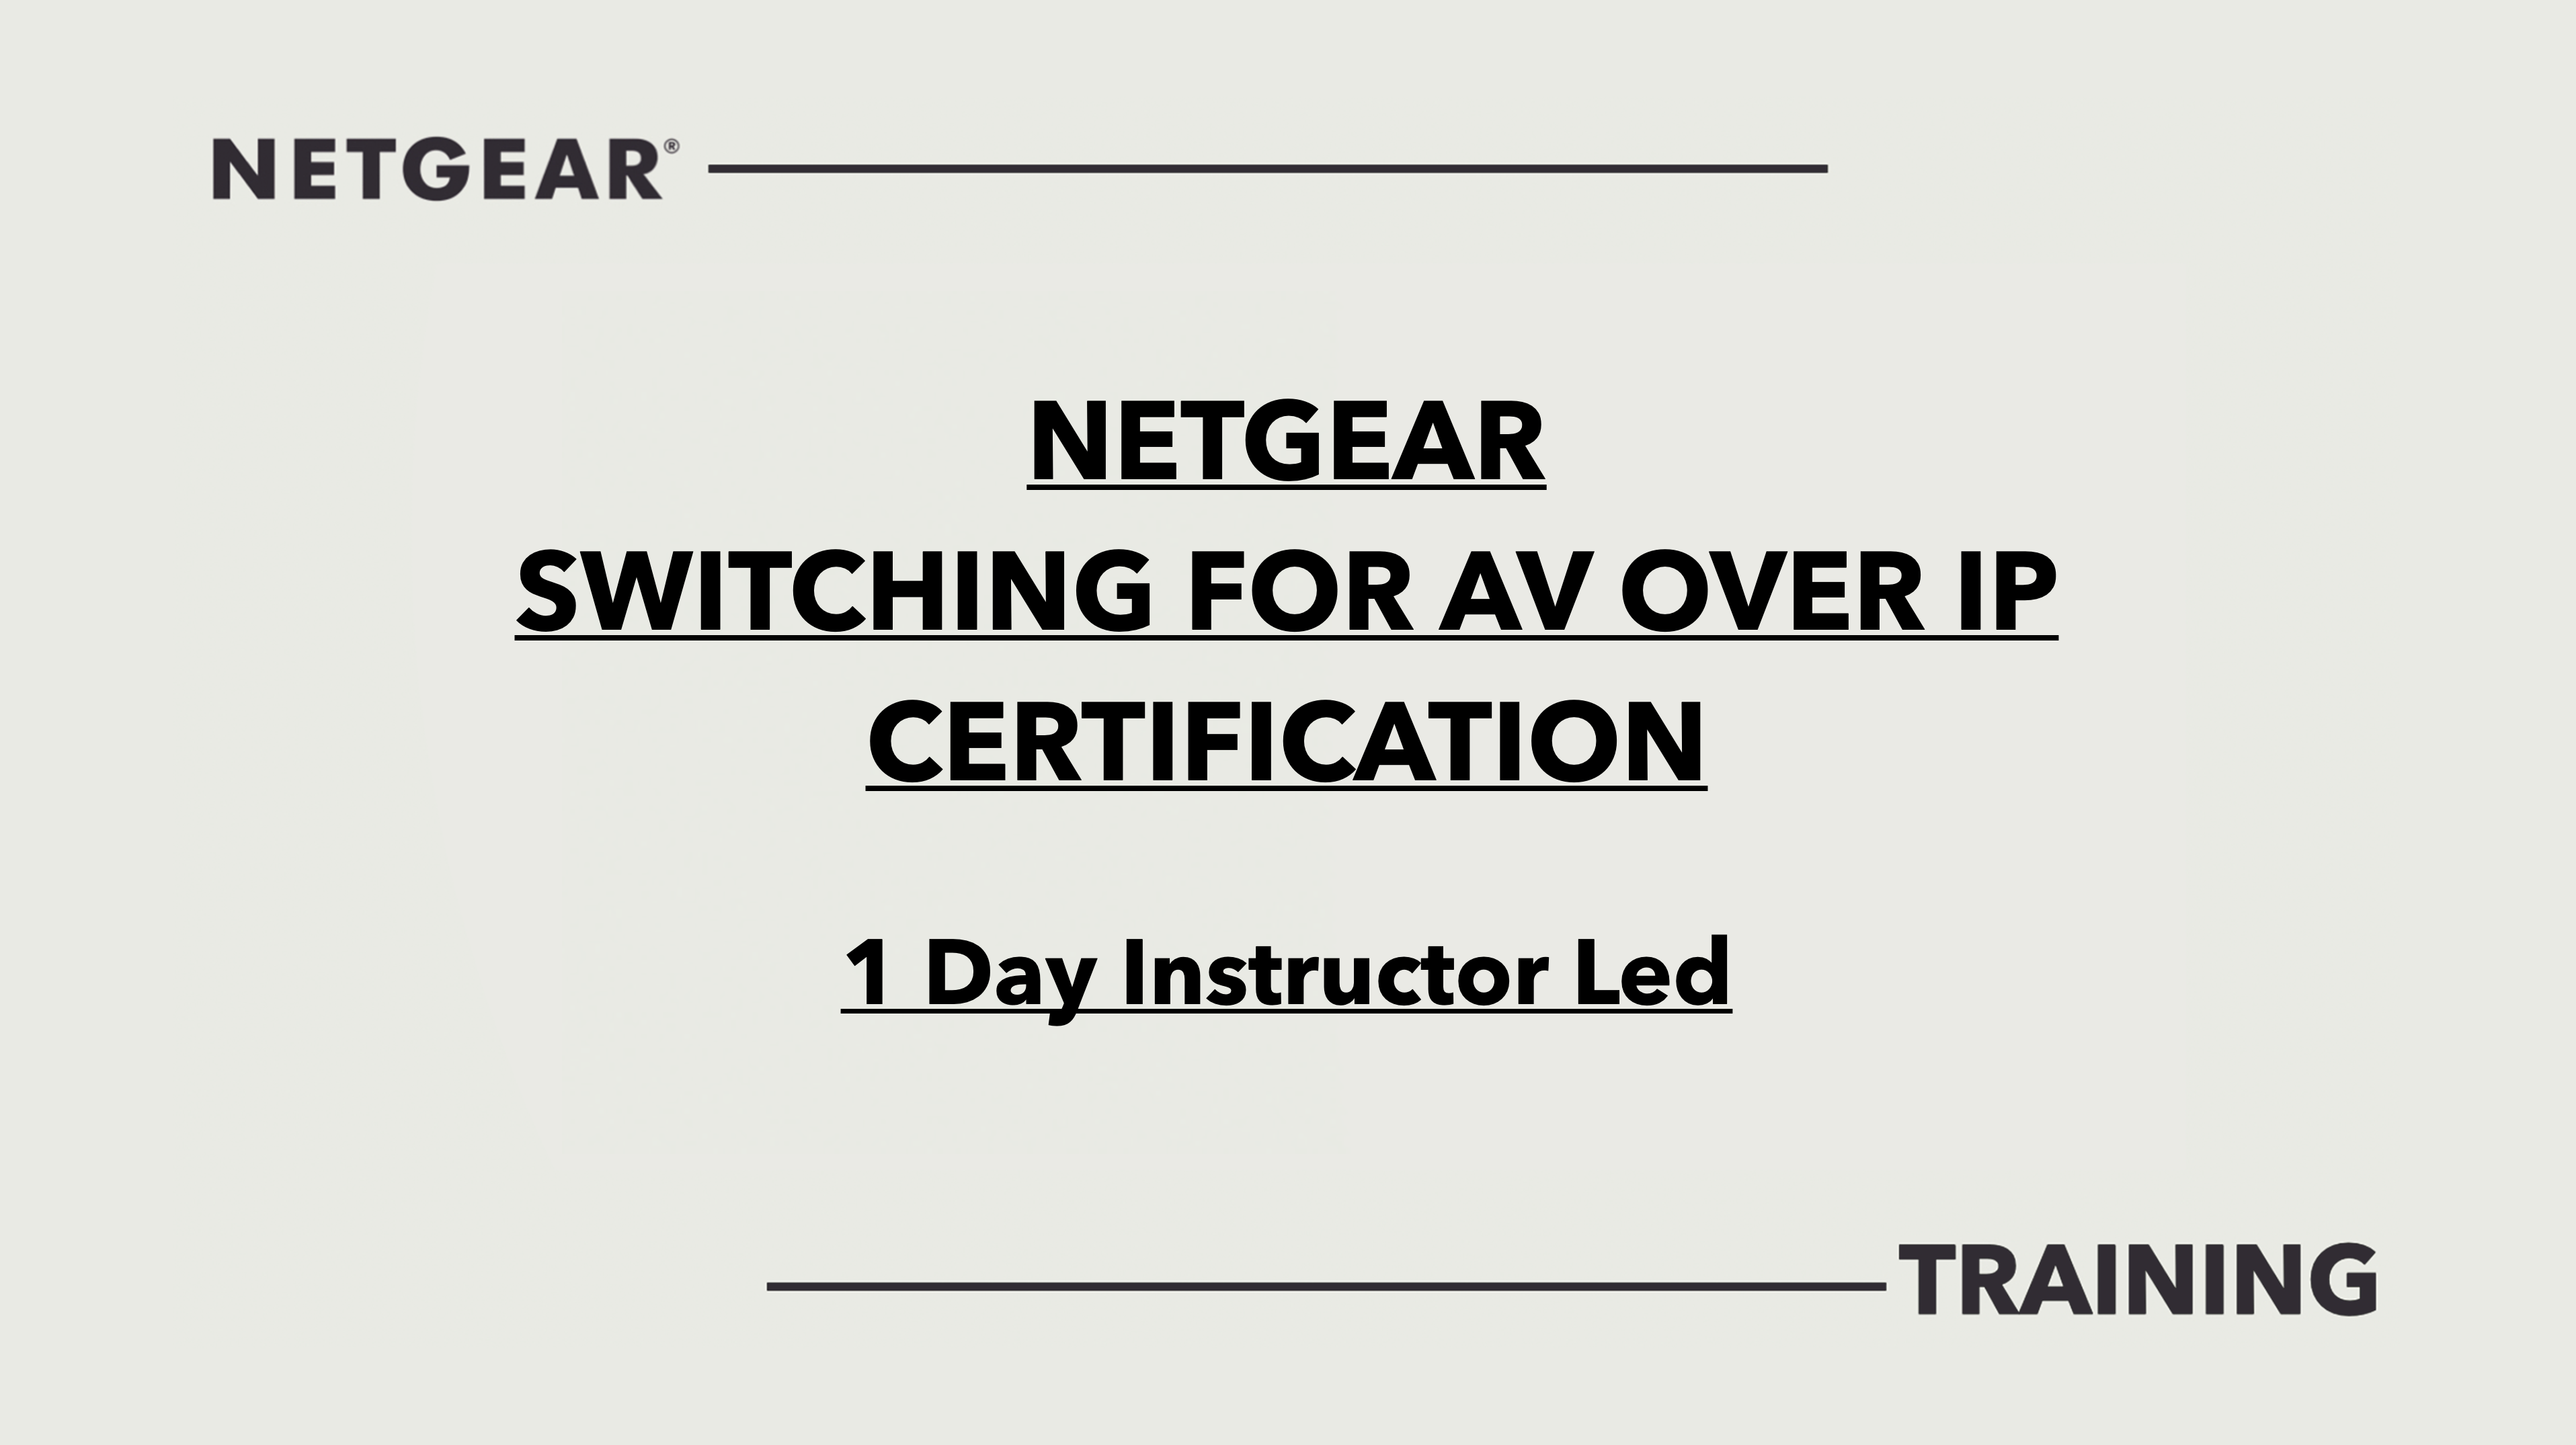 NETGEAR Switching for AV over IP - Classroom Based